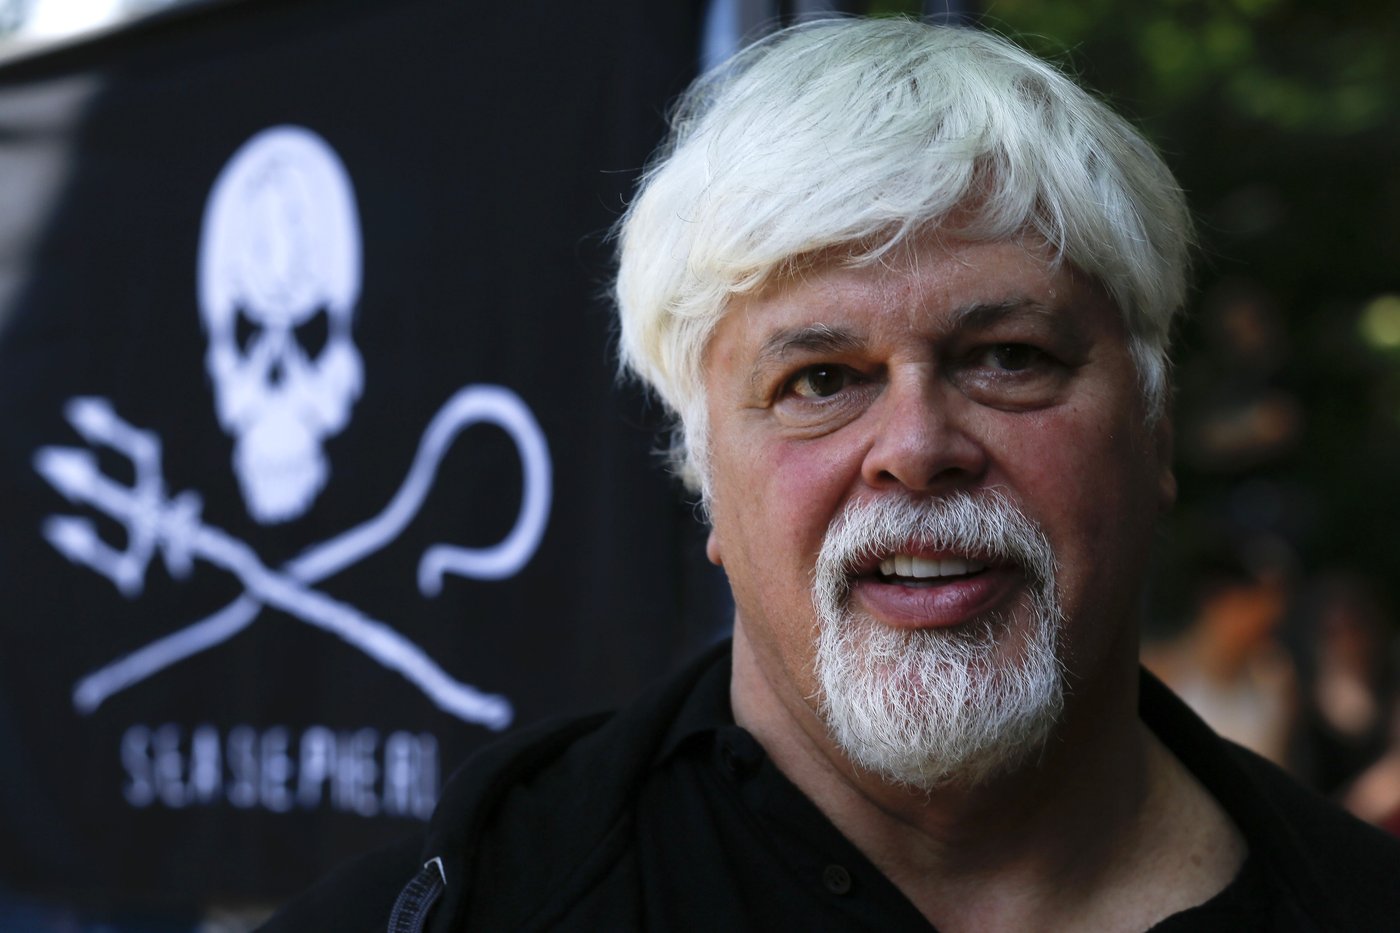 Le Canadien Paul Watson, fondateur de Sea Shepherd, arrêté au Groenland